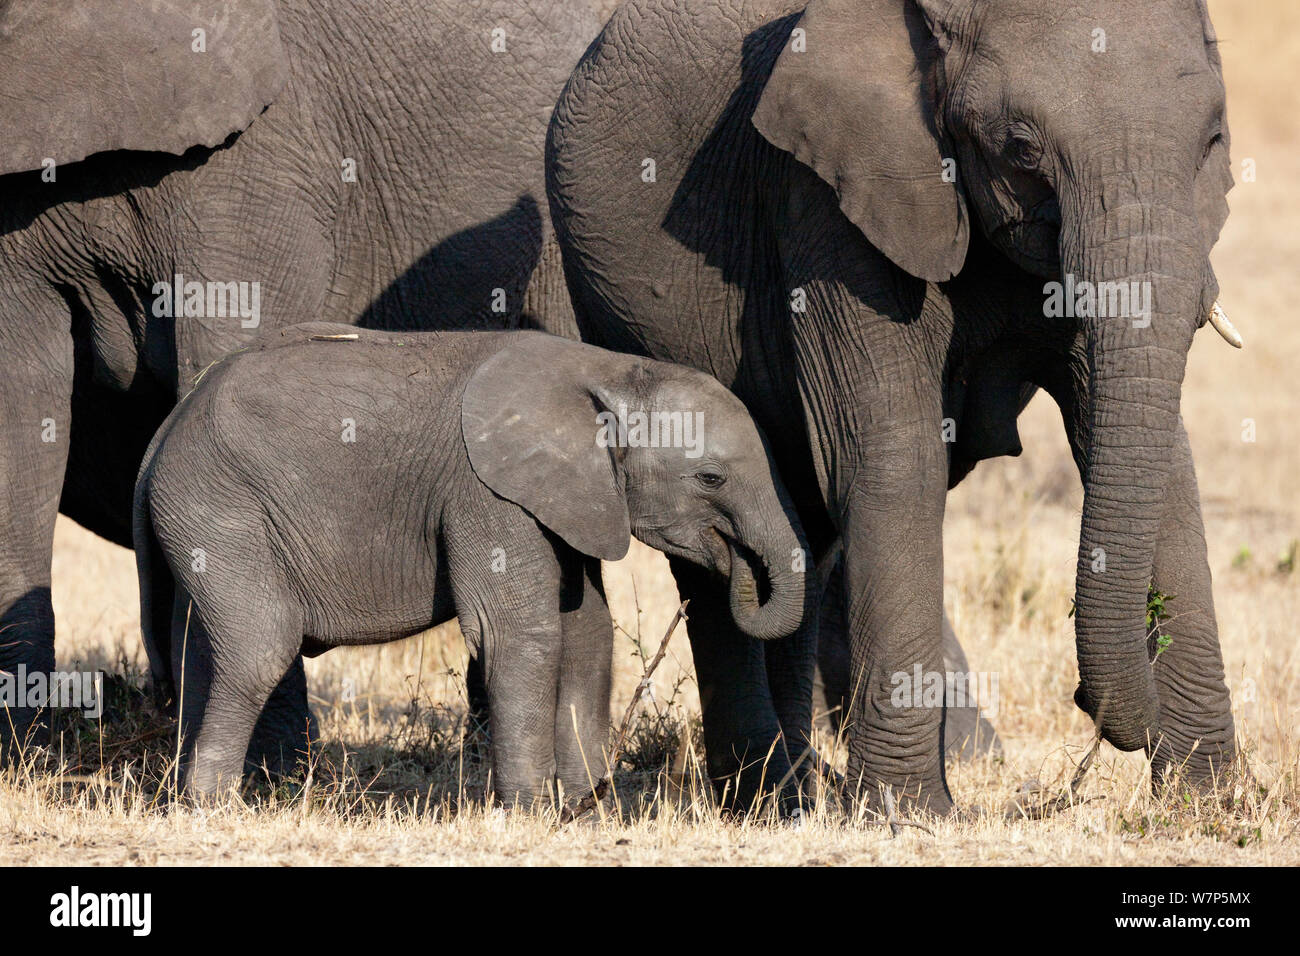 L'éléphant africain (Loxodonta africana) la mère et l'enfant l'alimentation. Masai-Mara Game Reserve, Kenya. Banque D'Images